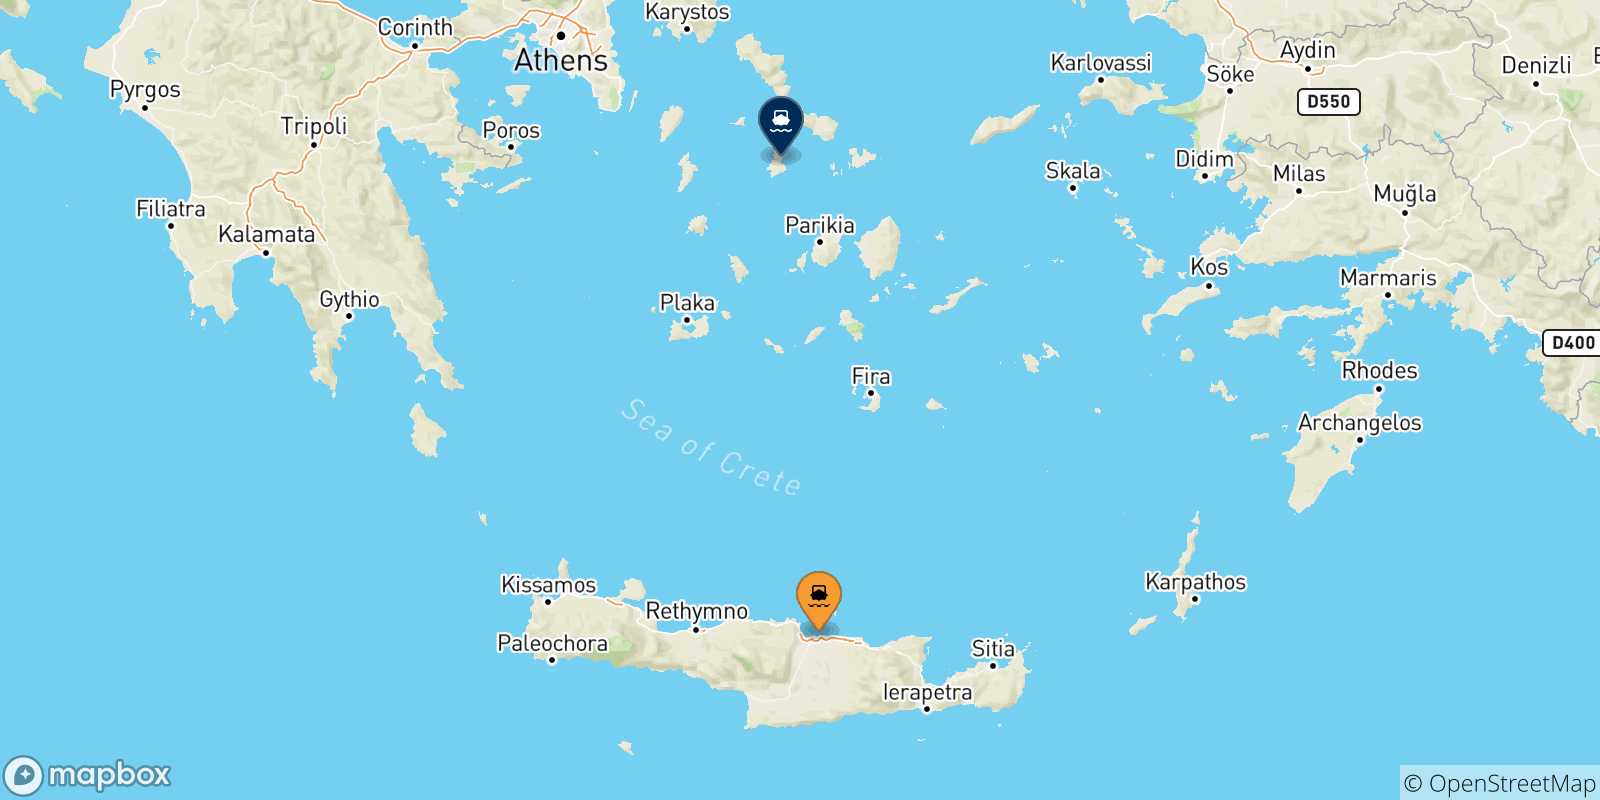 Mappa delle possibili rotte tra Creta e Syros